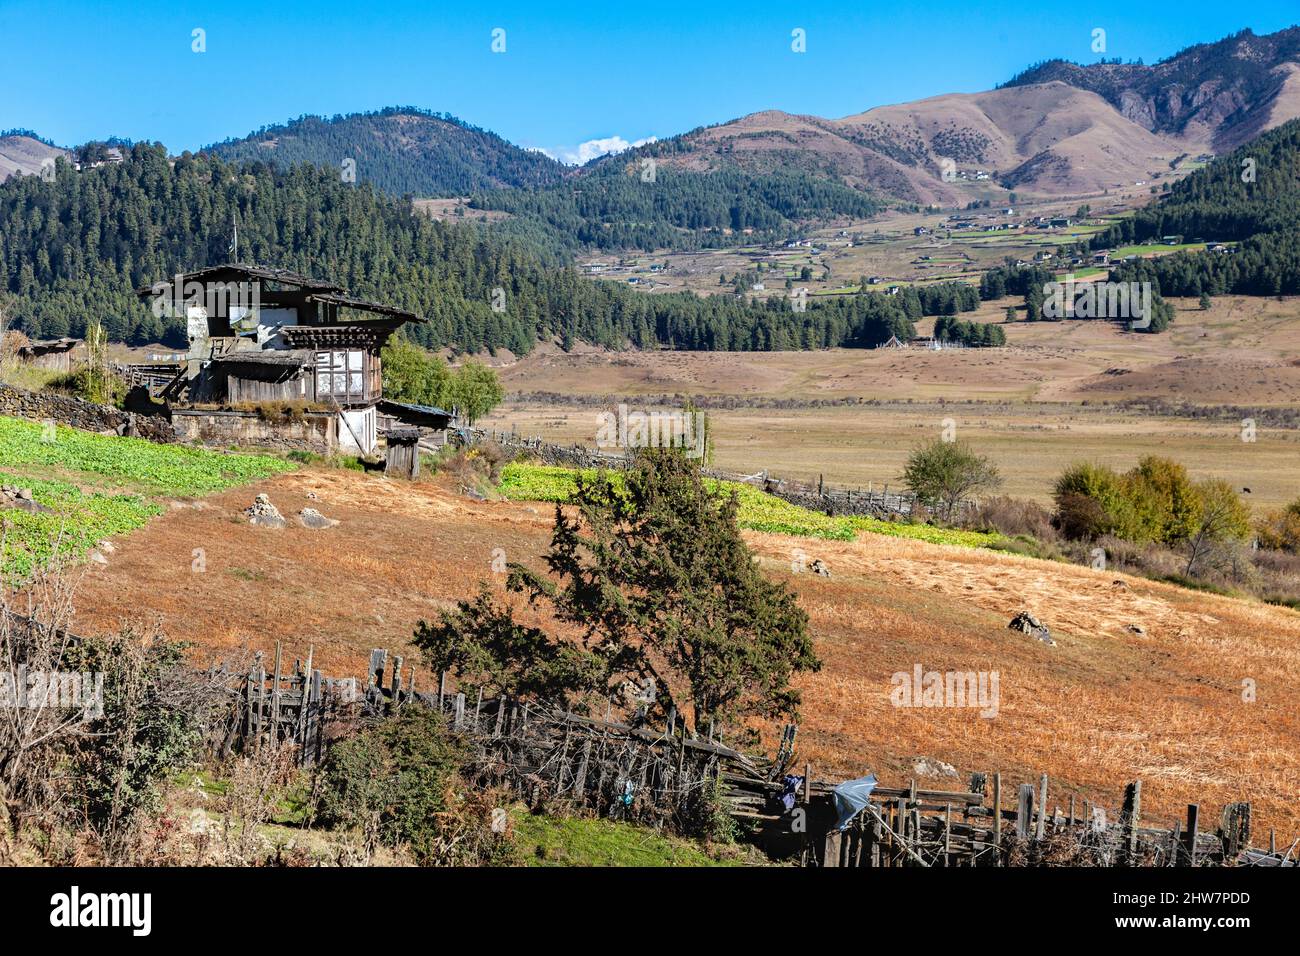 Le Bhoutan, Phobjikha. Scènes de la vallée, les terres agricoles et les établissements humains. Ferme rurale typique en premier plan. Banque D'Images